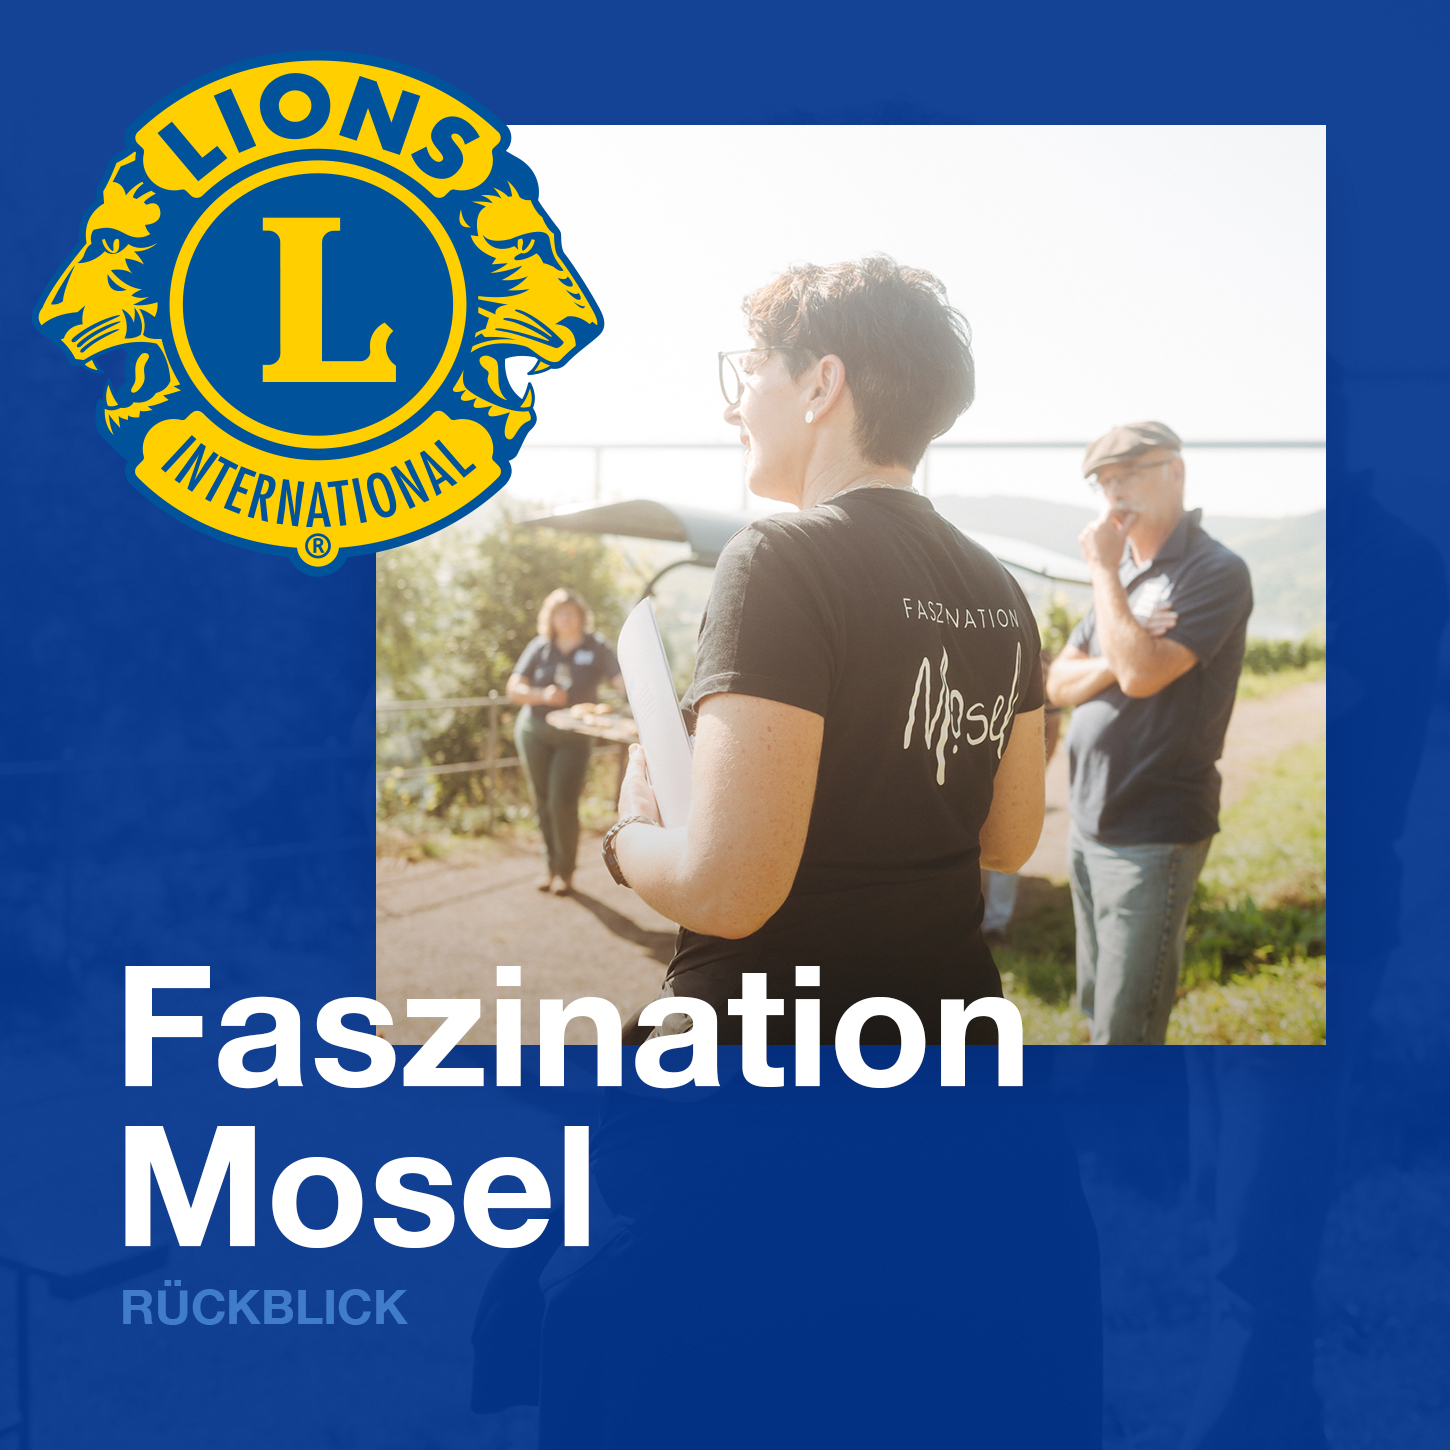 Faszination Mosel und Lions Club Wittlich